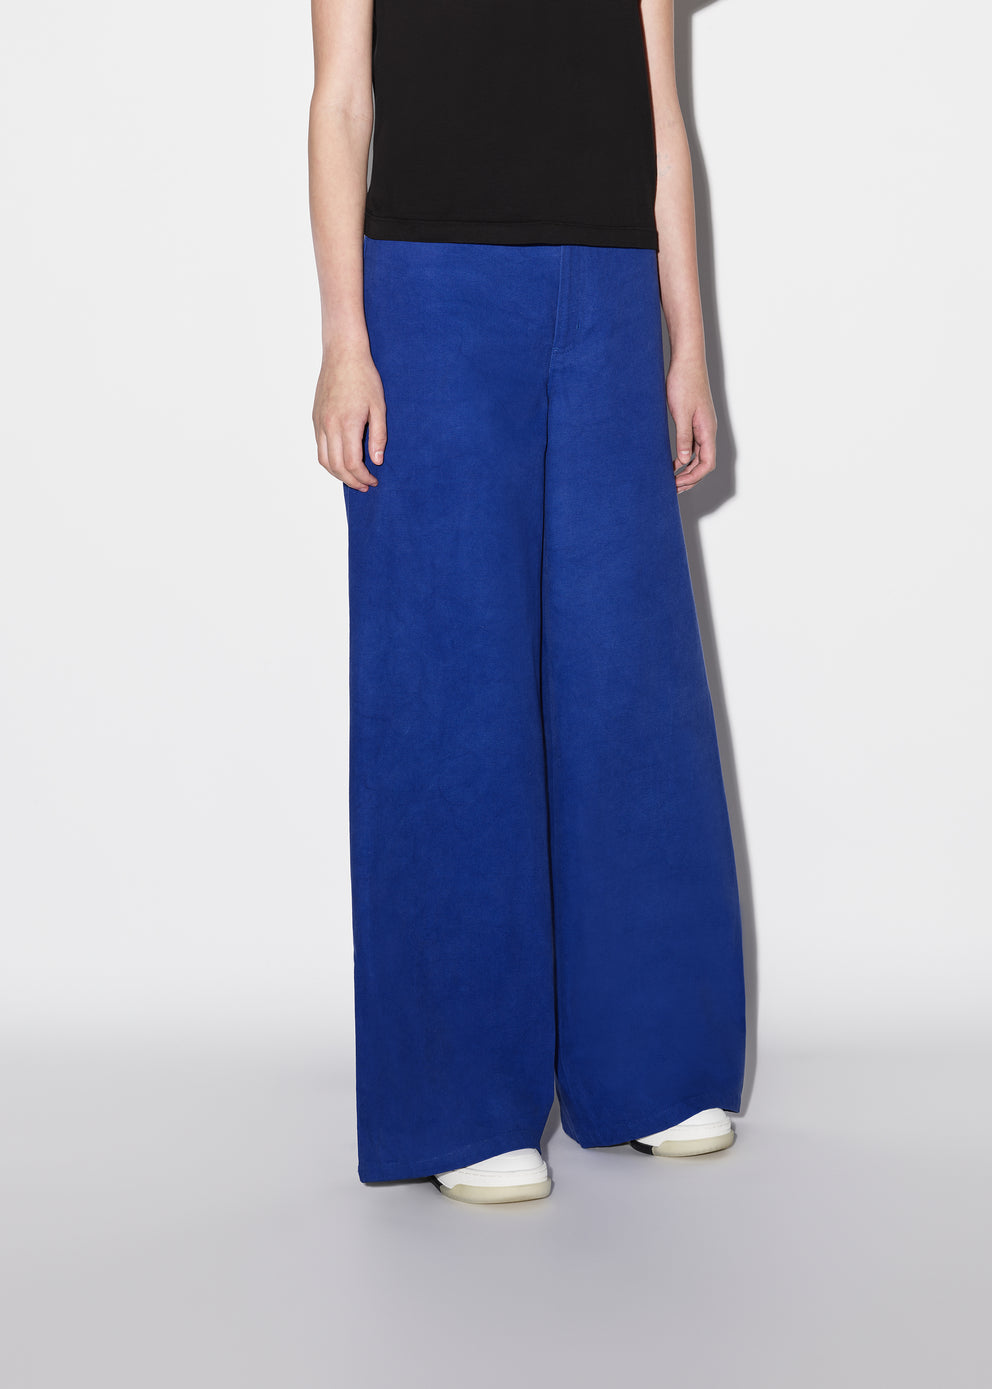 Pantalones Amiri Baggy Chino Mujer Azules | 2507QIBHD